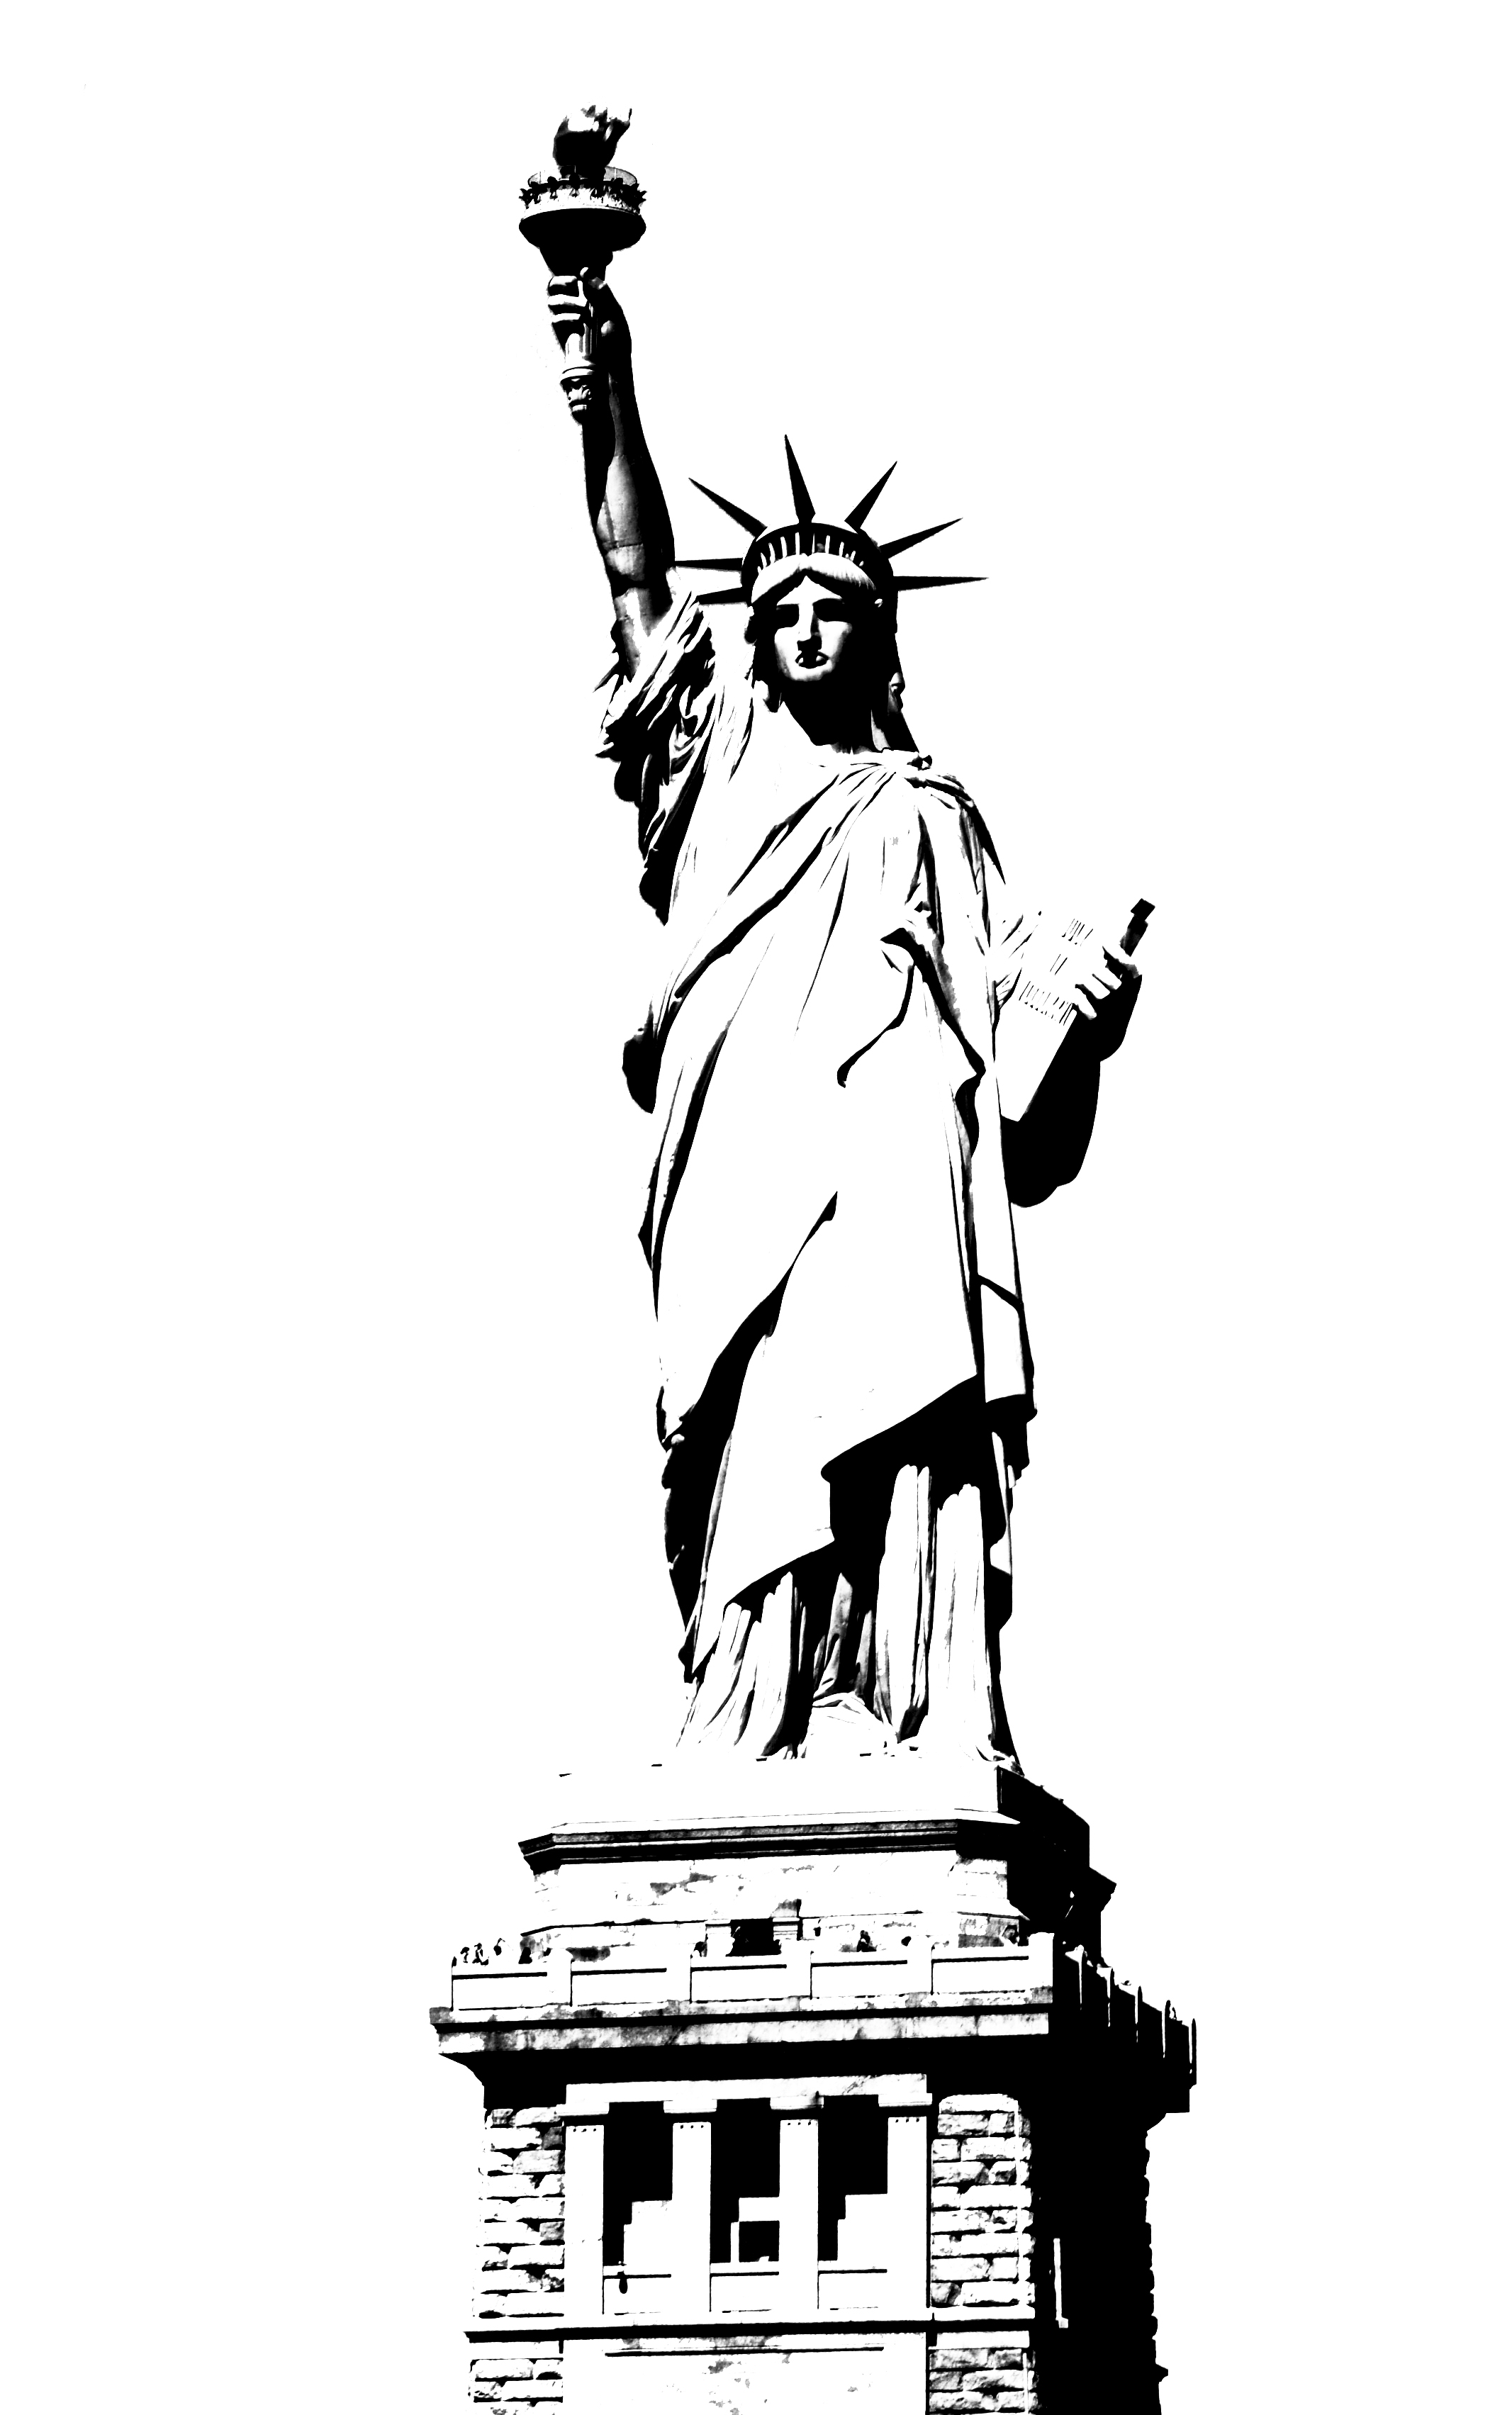 черно белое статуя свободы